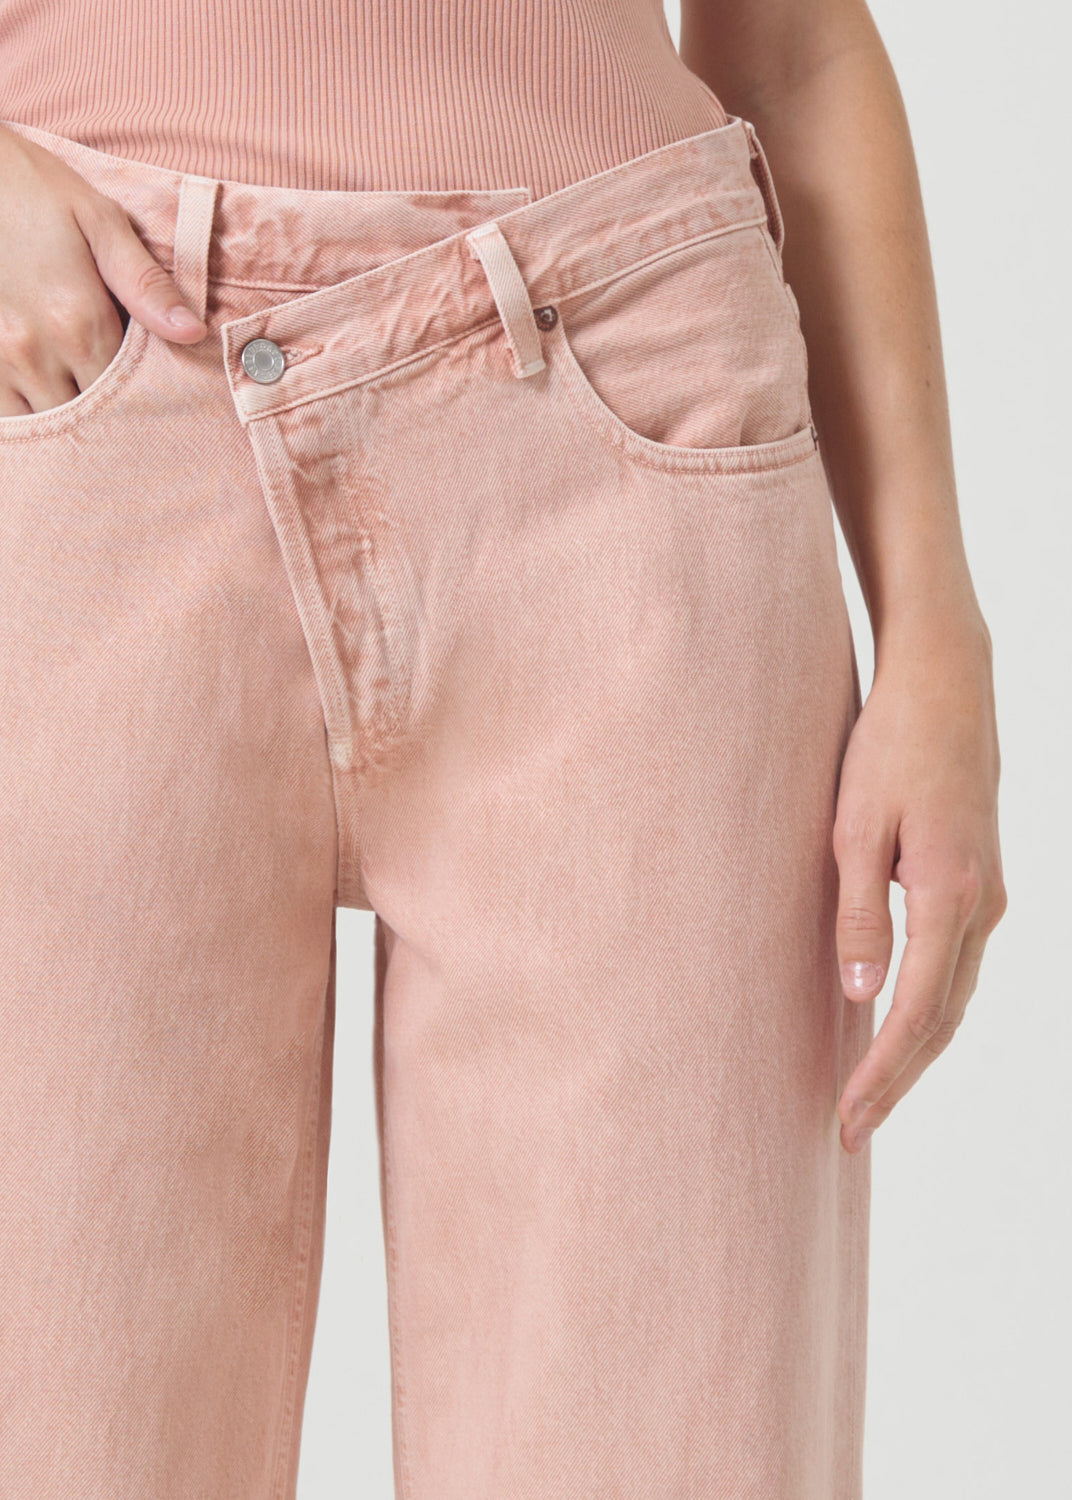 Criss Cross Upsized Jean in Pink Salt